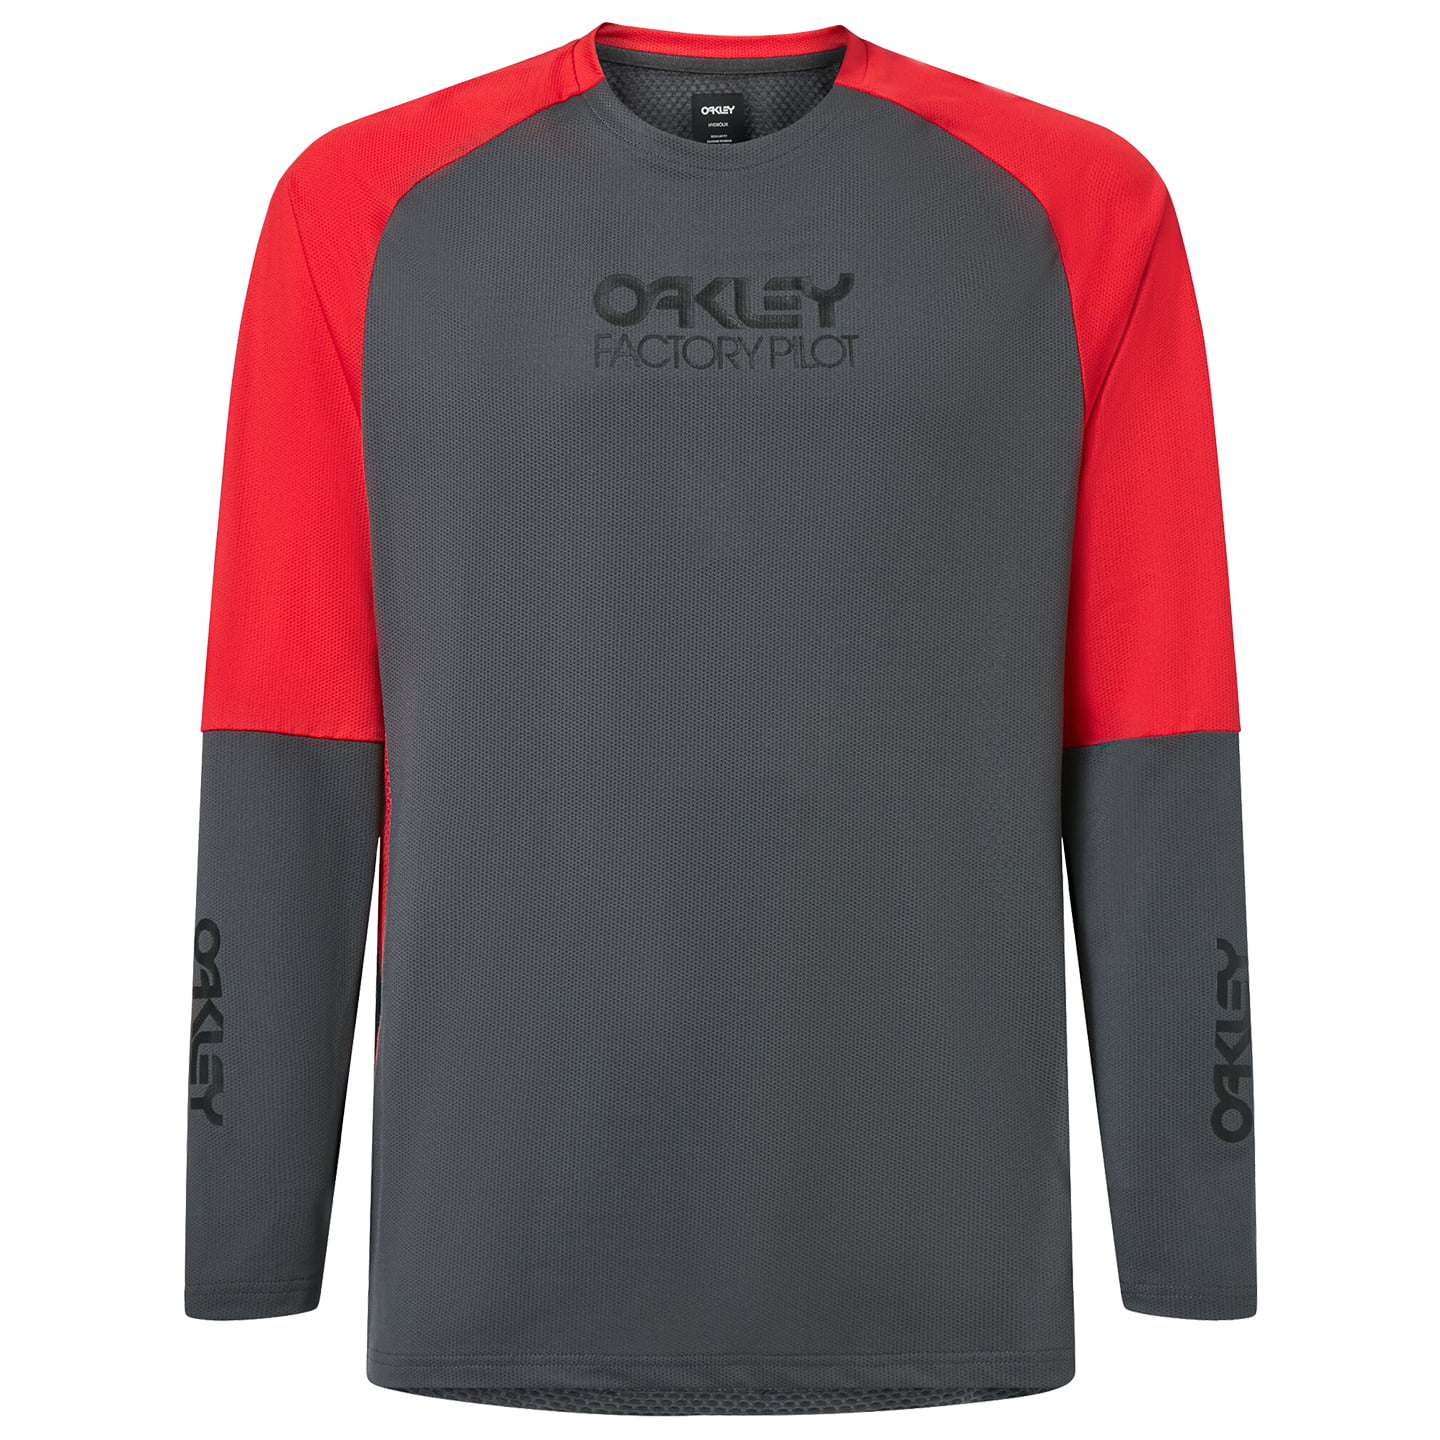 OAKLEY Factory Pilot Long Sleeve Bike Shirt Bikeshirt, for men, size XL